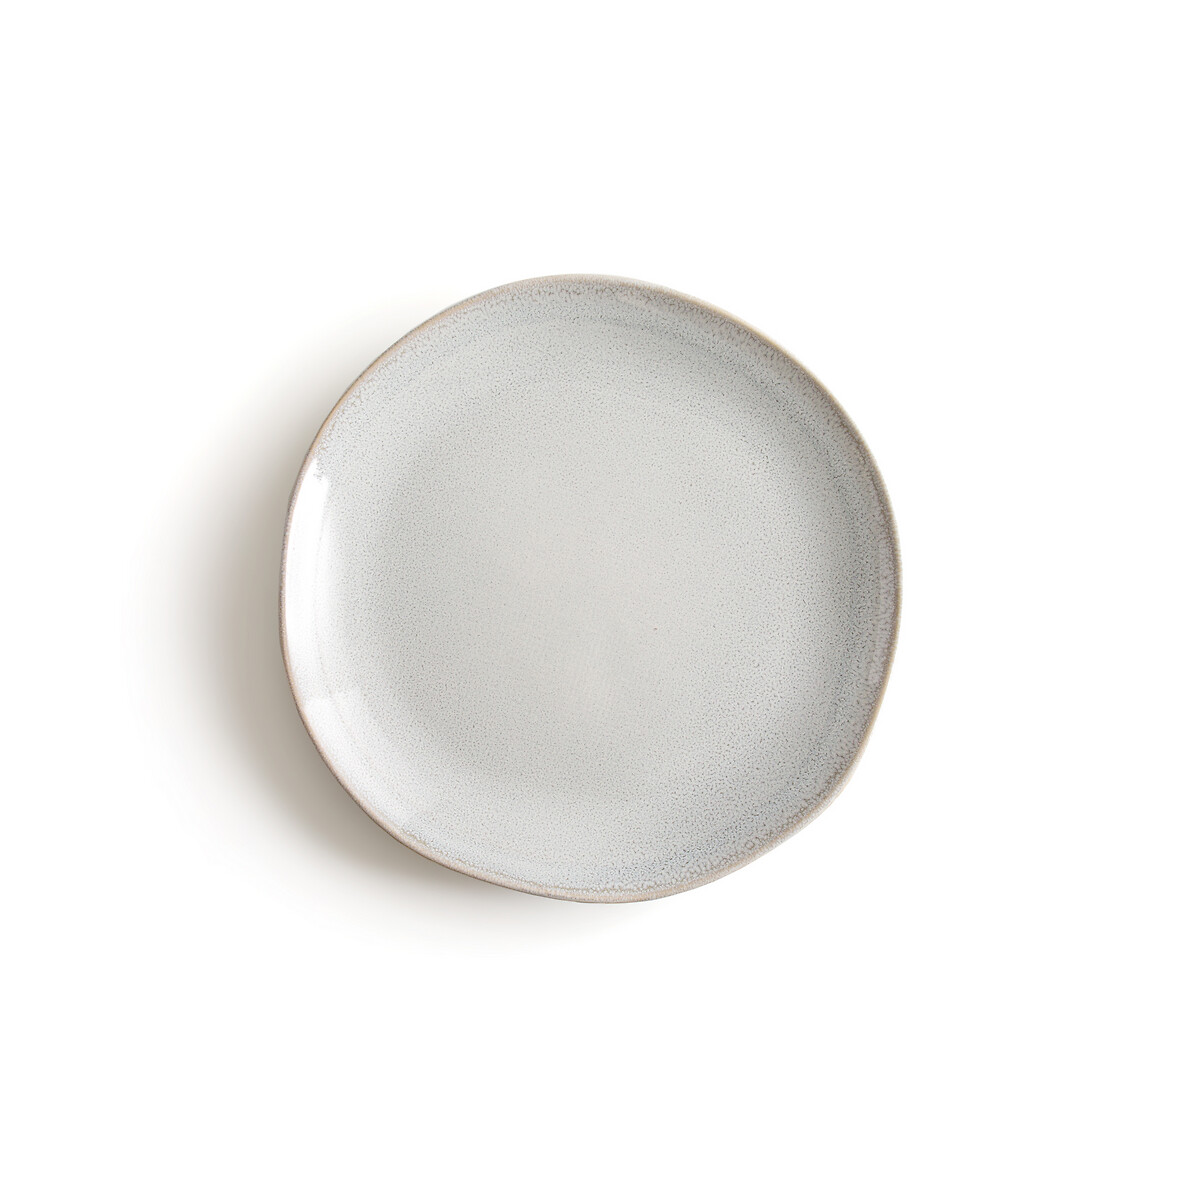 Комплект из 4 десертных тарелок Из керамики Soul единый размер серый